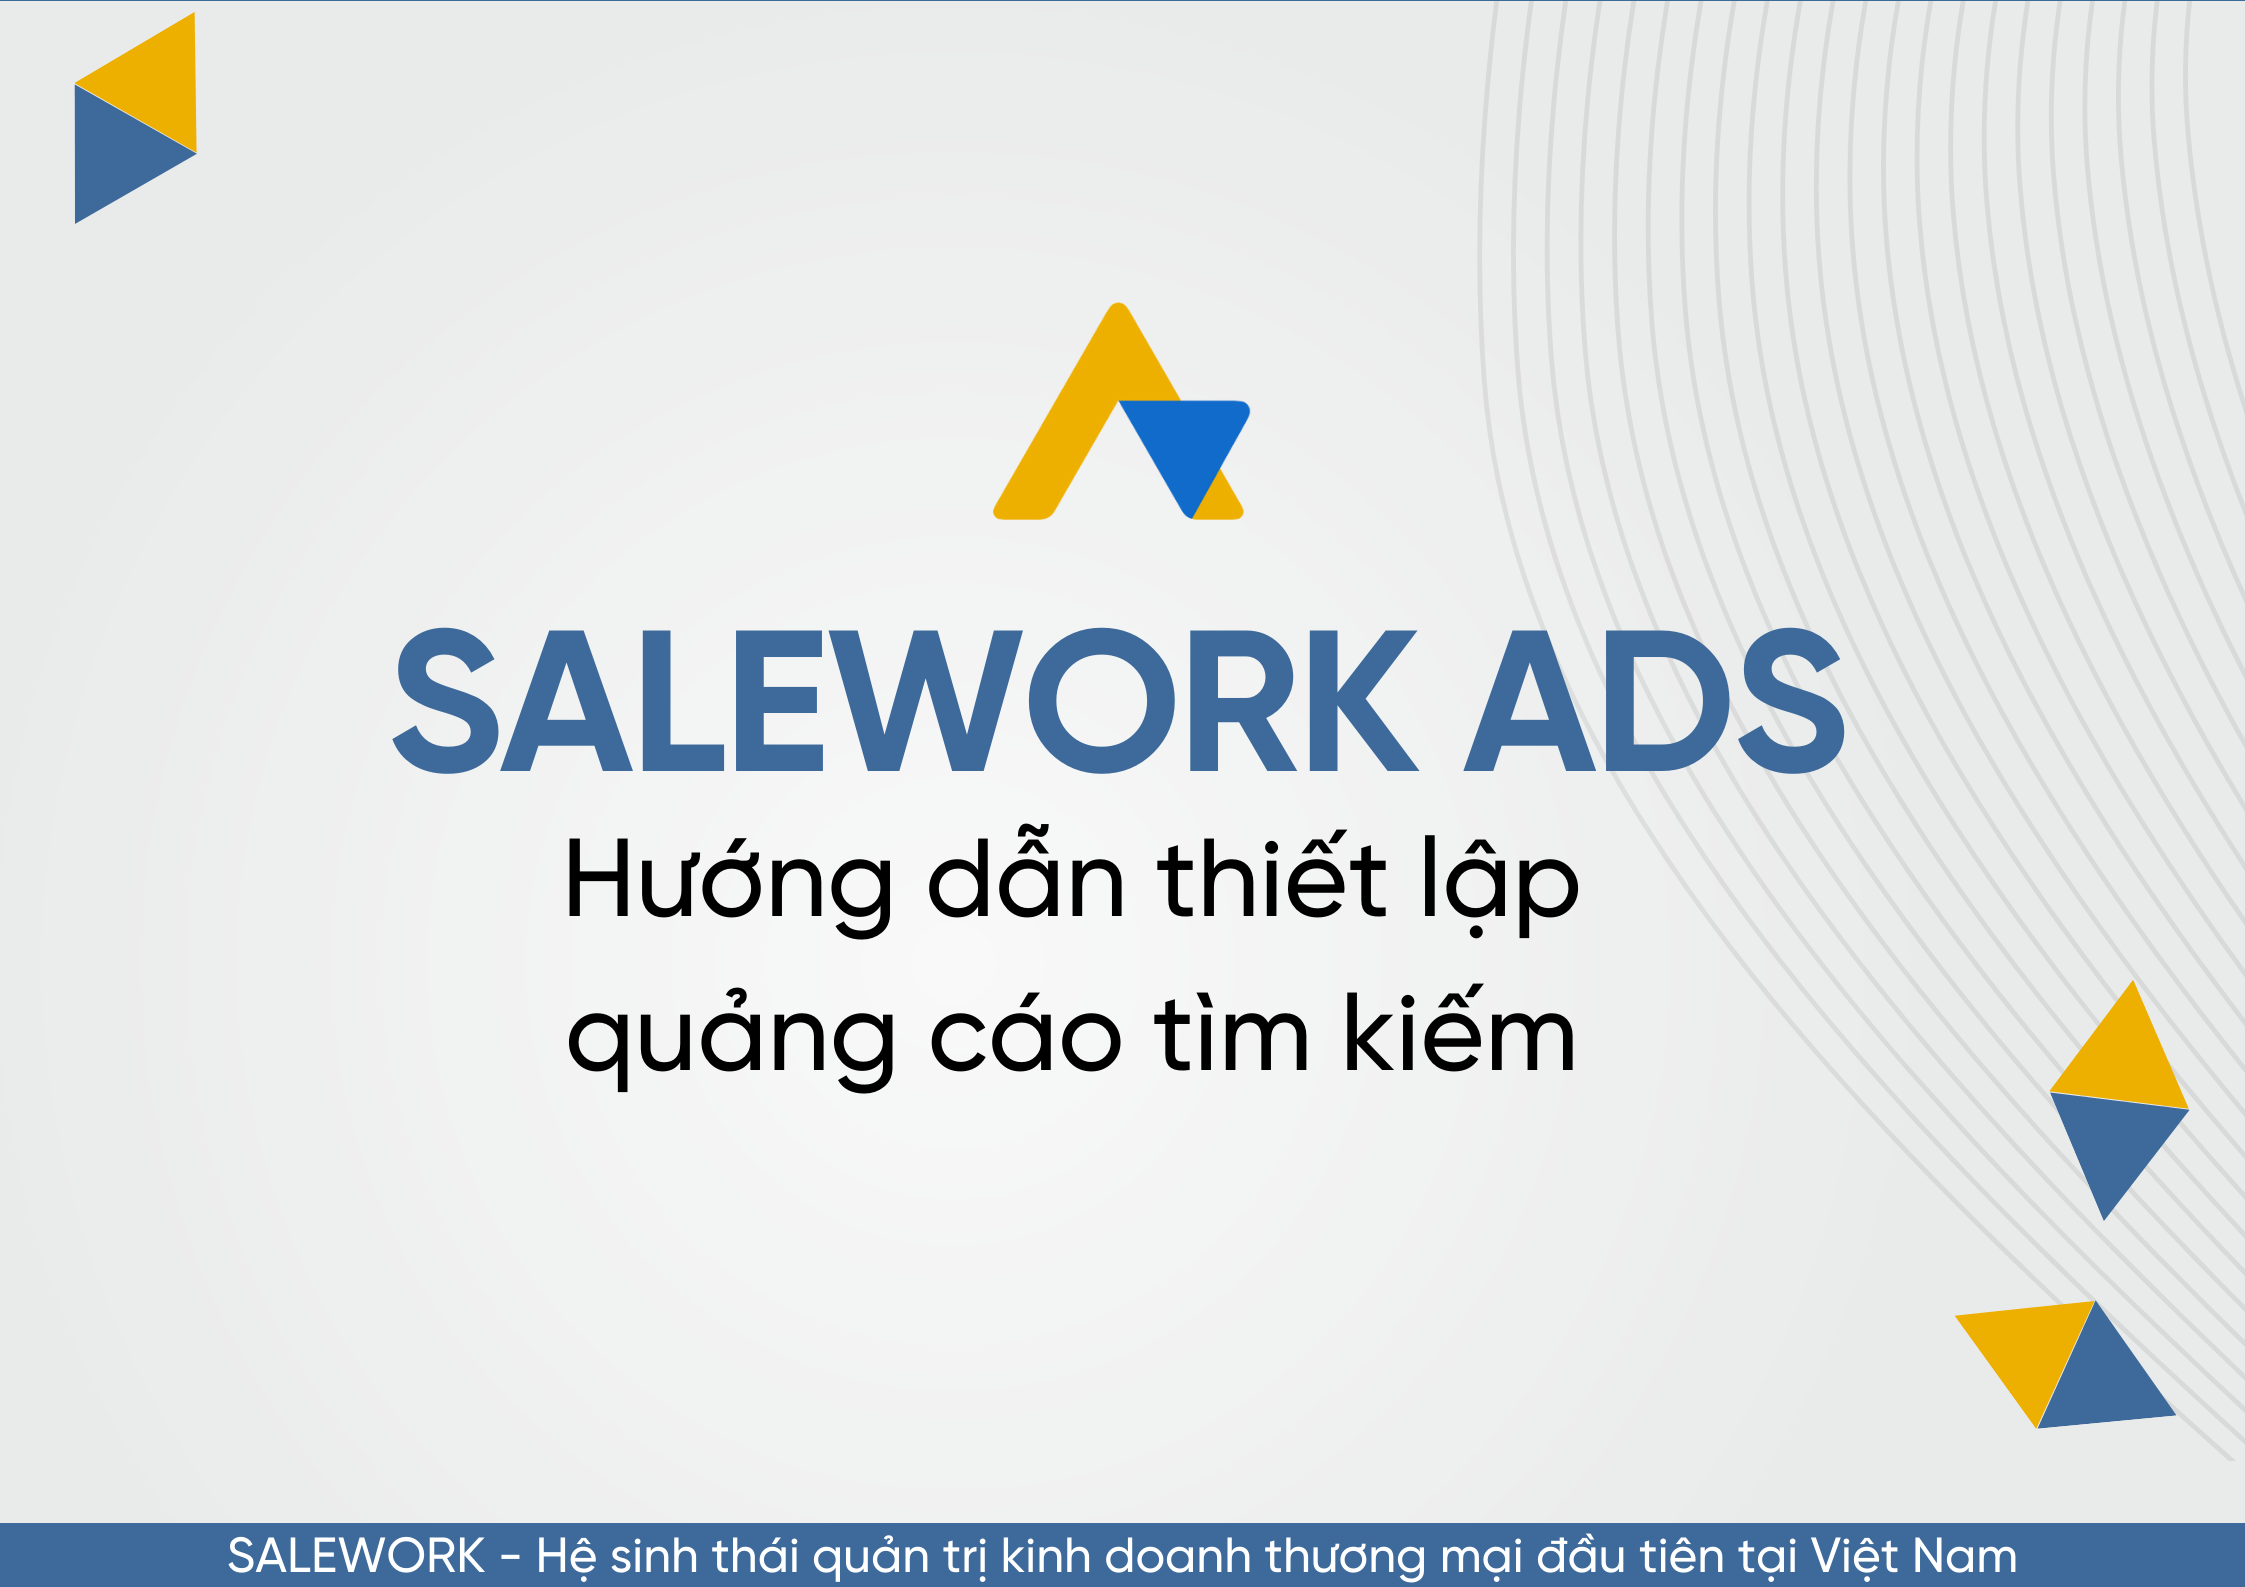 Hướng dẫn thiết lập quảng cáo tìm kiếm tại Salework Ads - 29